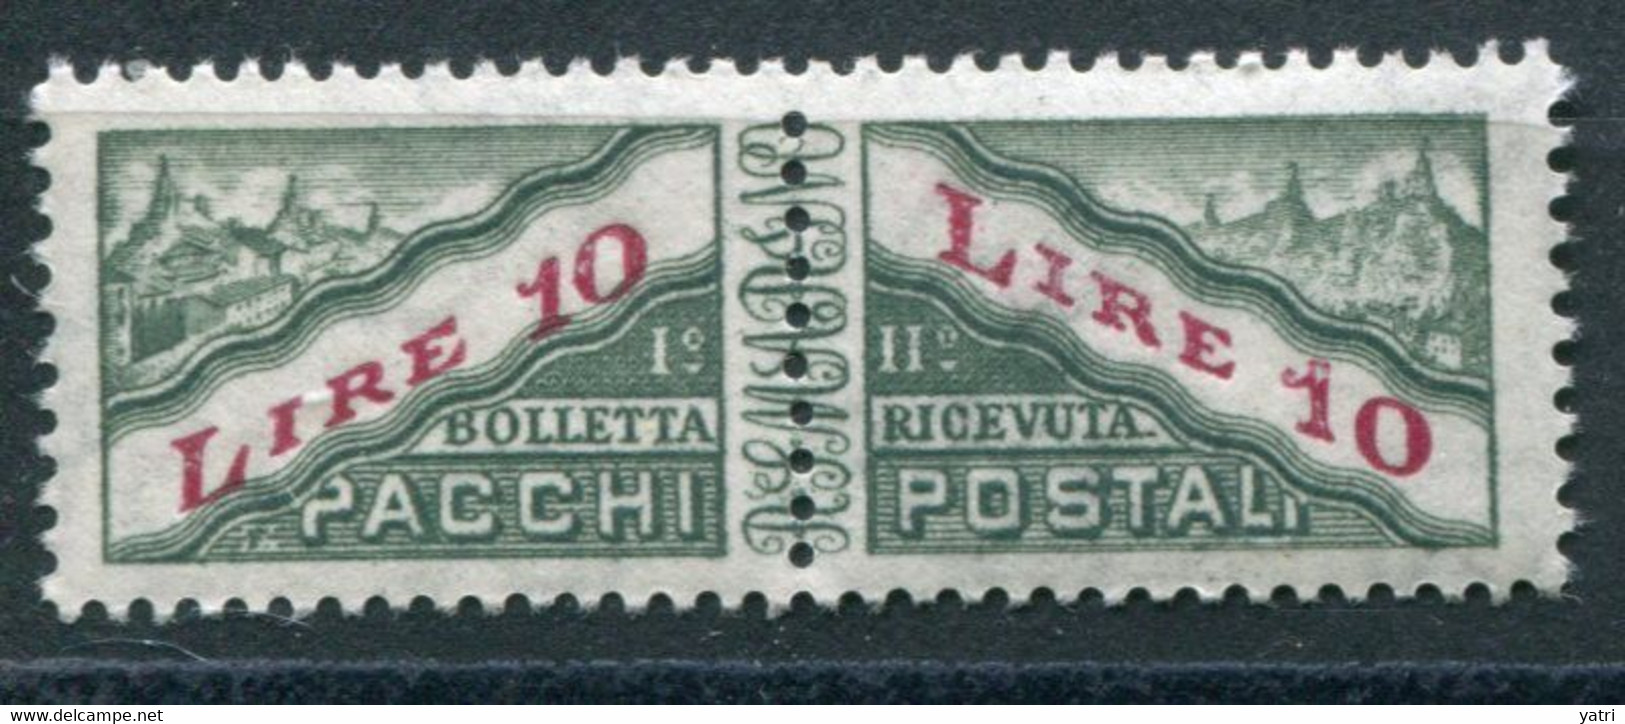 Repubblica Di San Marino  -  1965 -- 10 Lire Pacchi  Sass. 42 ** MNH - Pacchi Postali